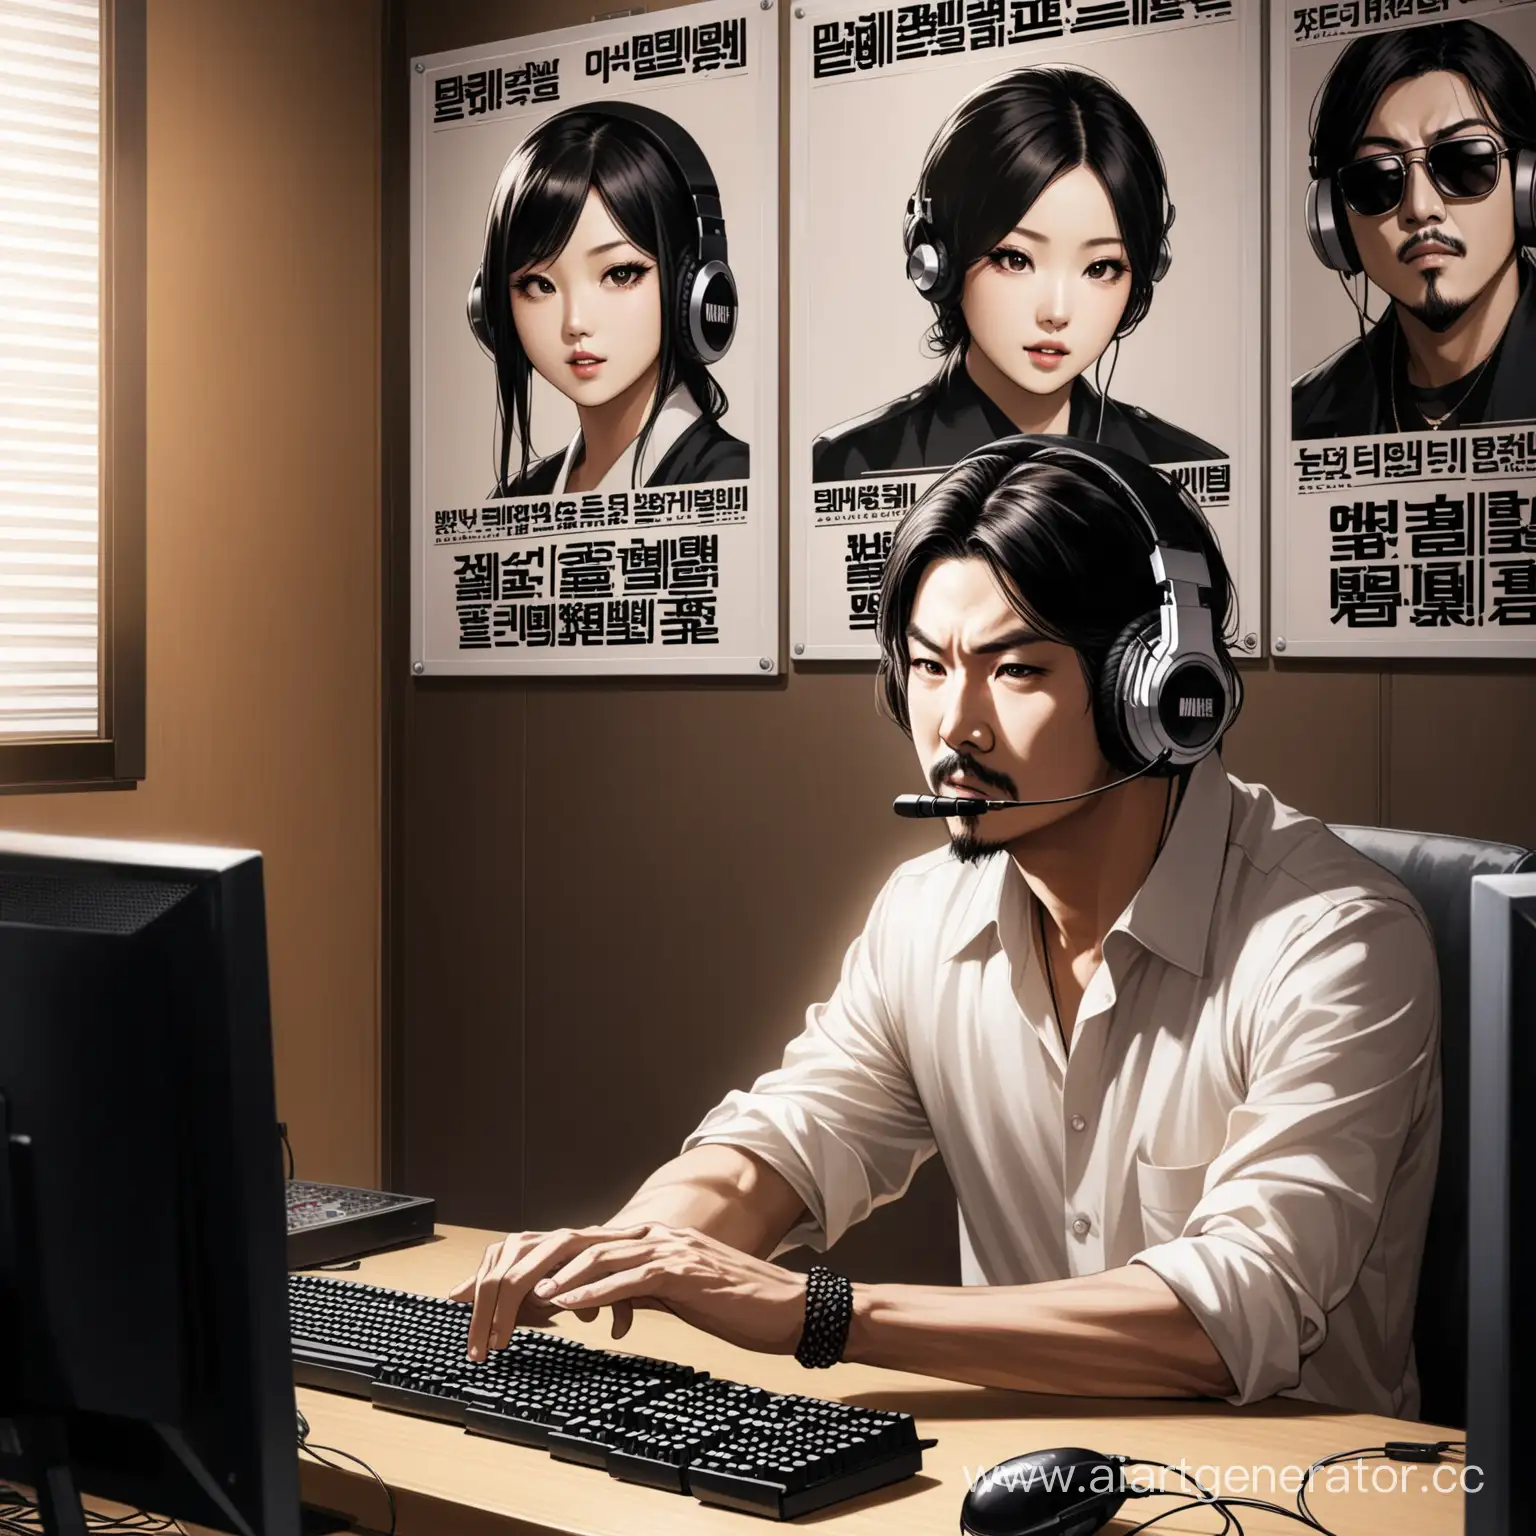 японский мафиозник в наушниках за компьютером сидит в комнате, на стене несколько плакатов с корейскими певцами, на экране игра Conter Strike
